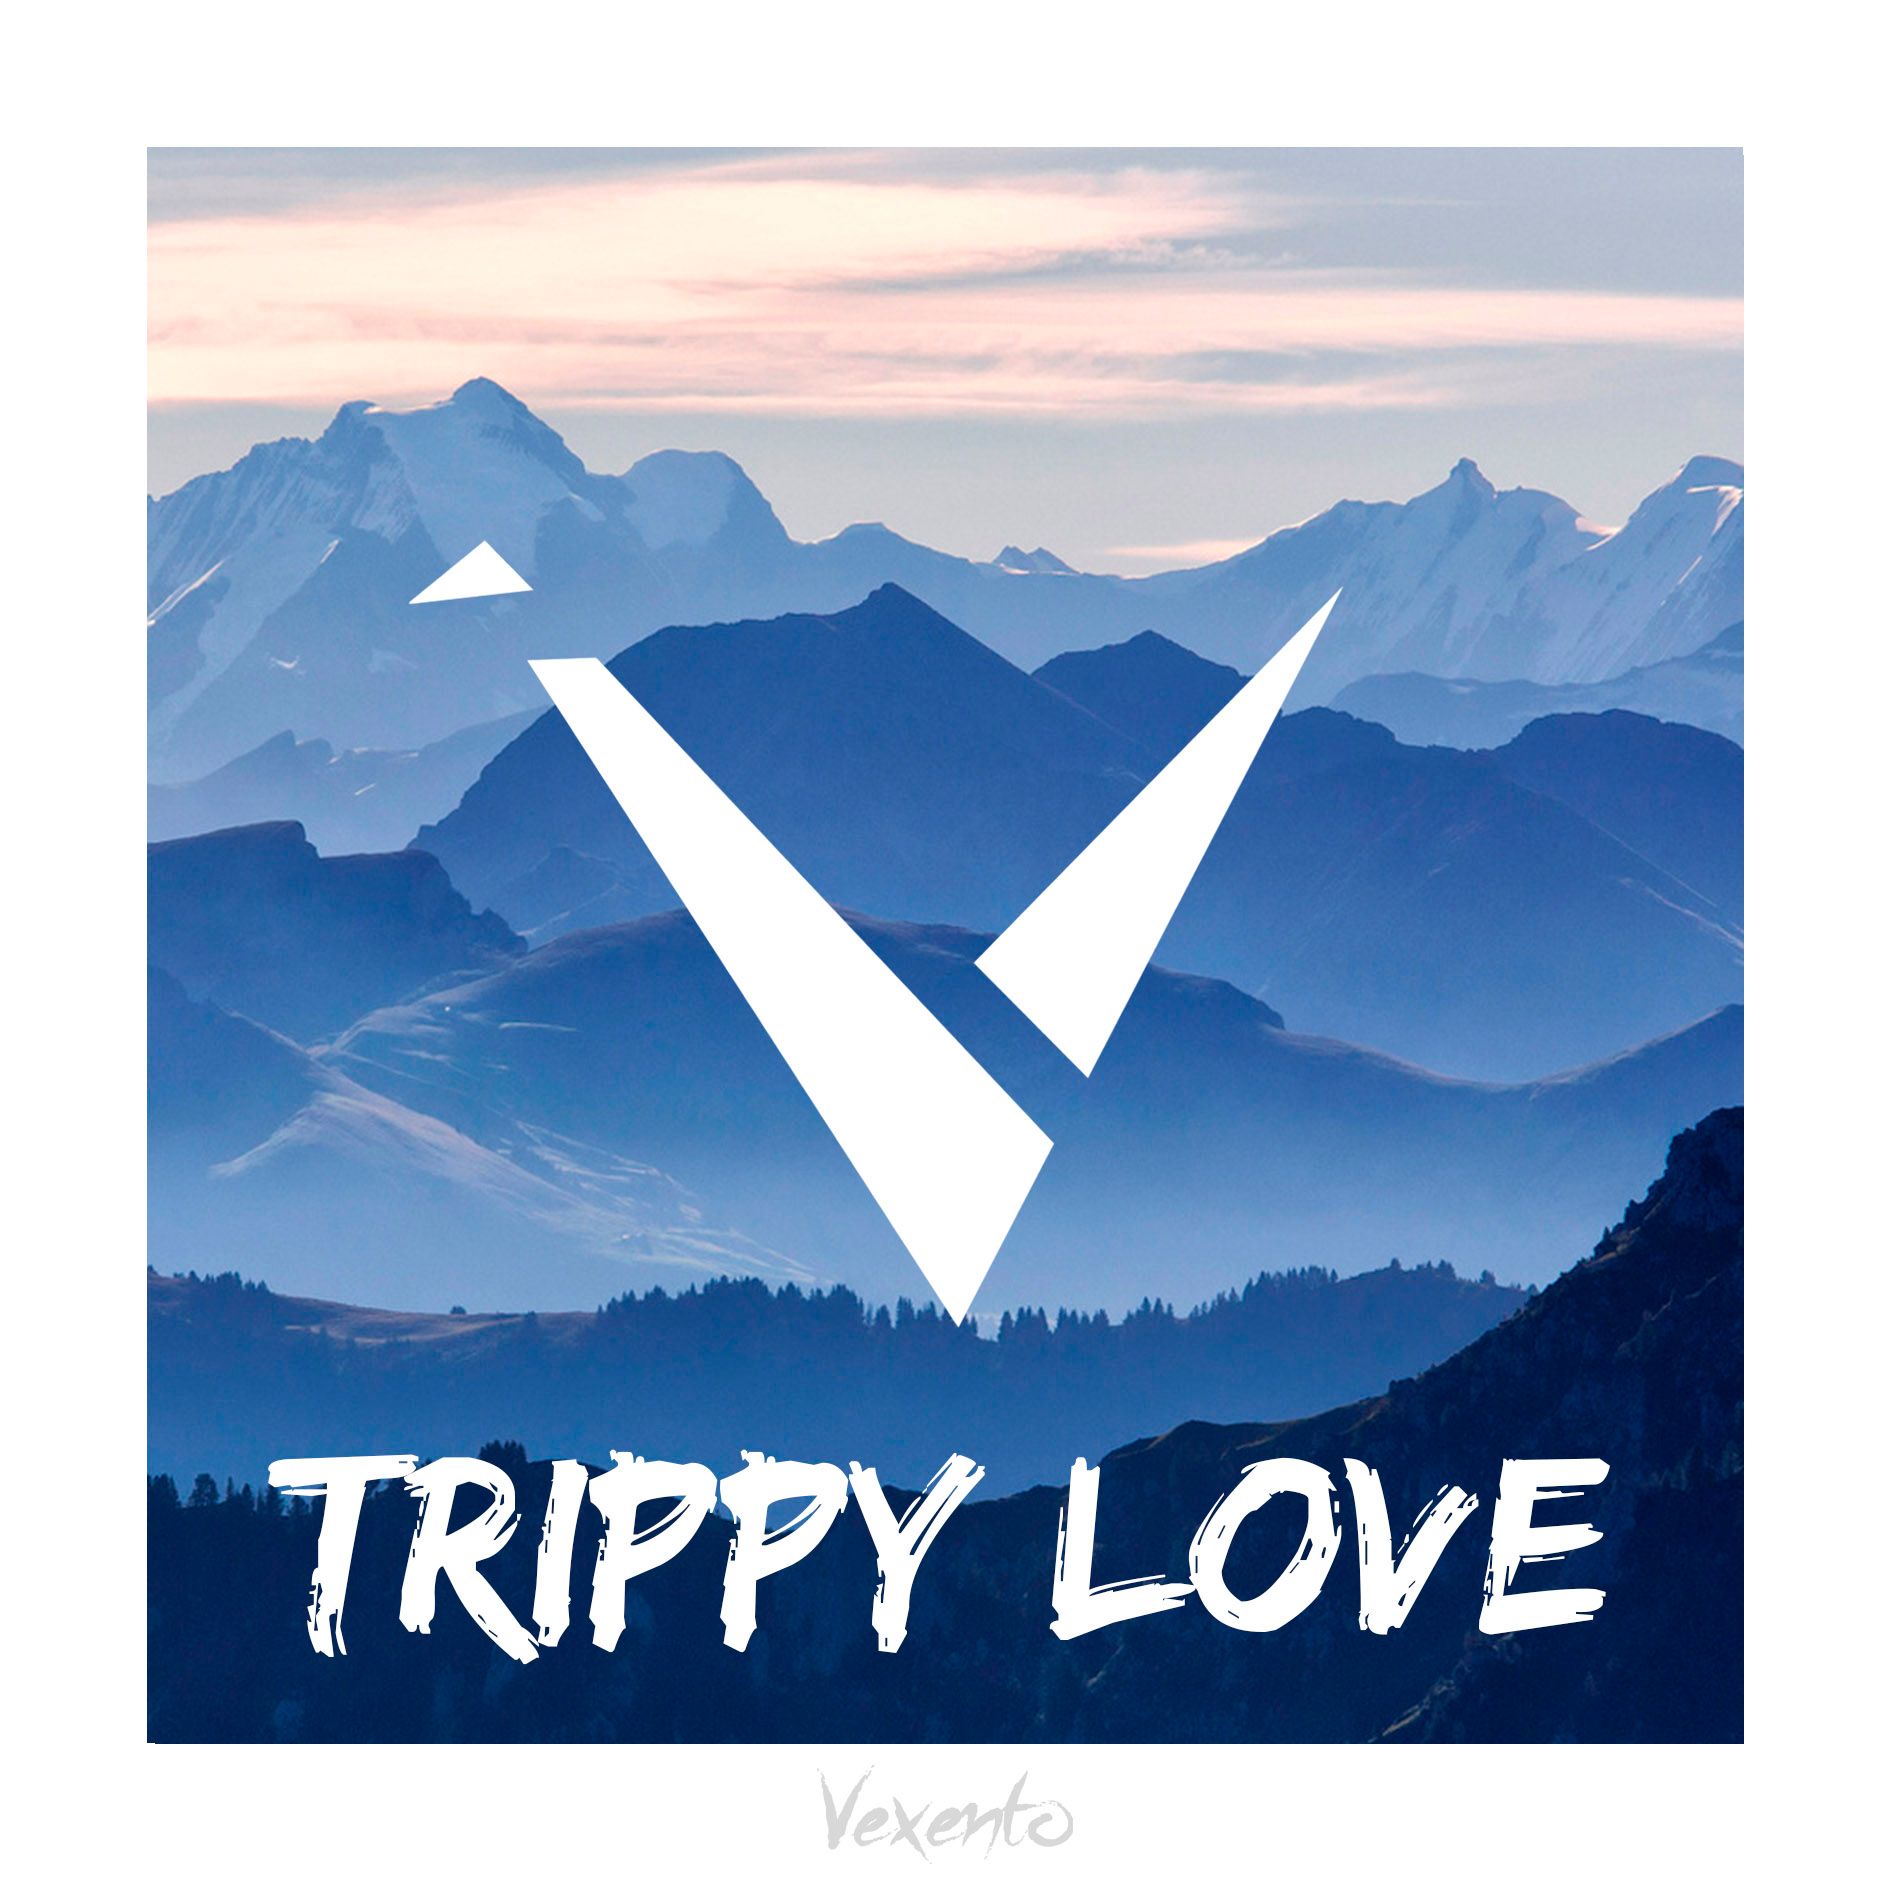 Letöltés Vexento - Trippy Love